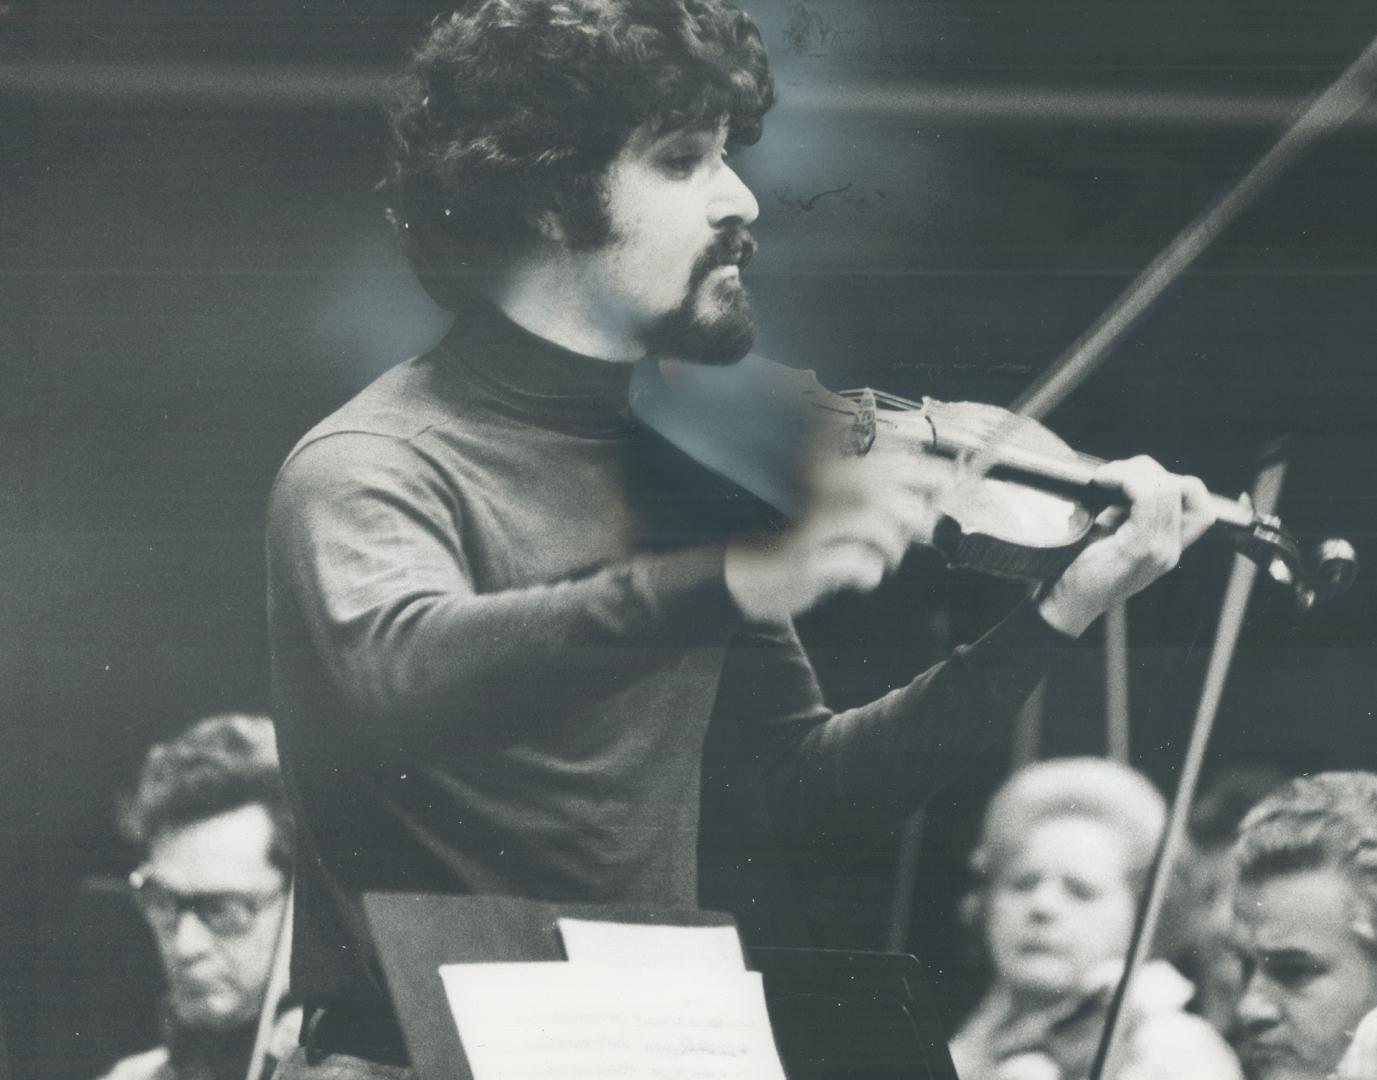 Pinchas Zukerman, Primarily a violinist